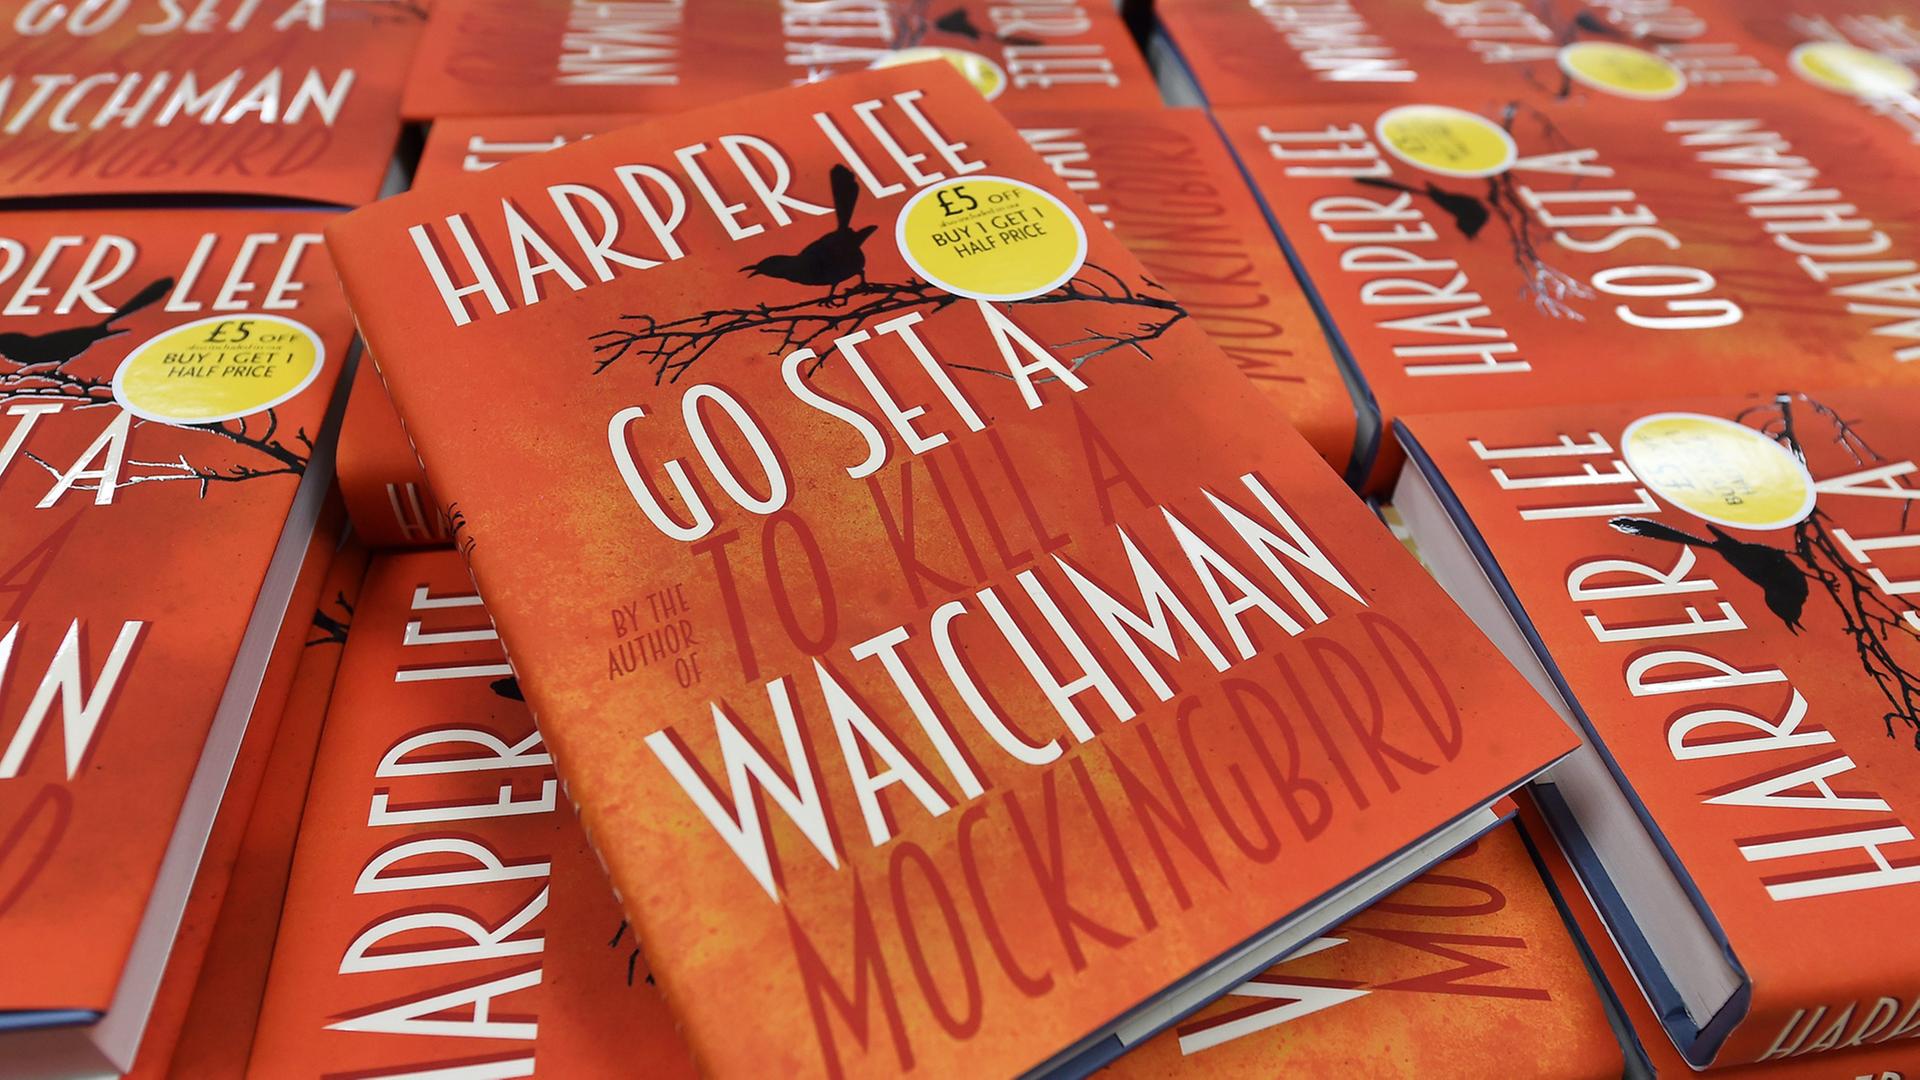 Das neue Buch der US-Autorin Harper Lee: "Go Set a Watchman" in einer Londoner Buchhandlung